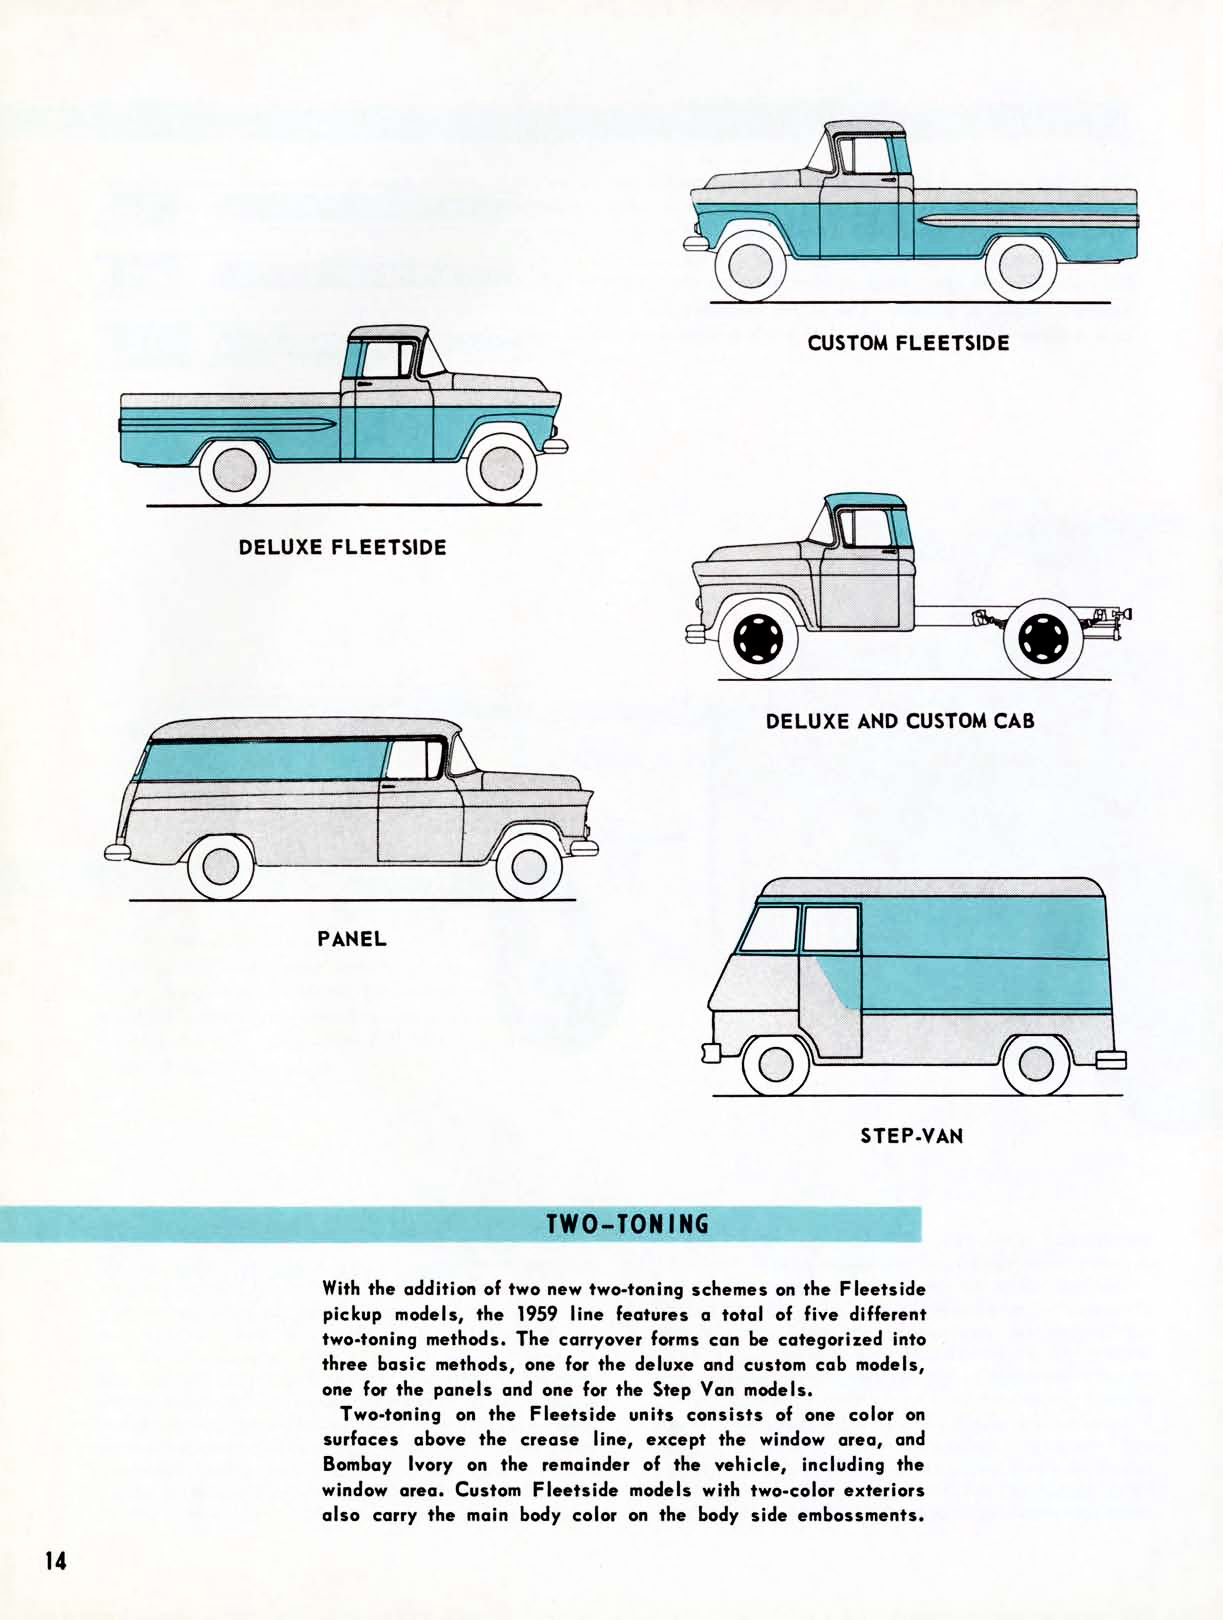 1959 Chevrolet Truck Engineering Features-14